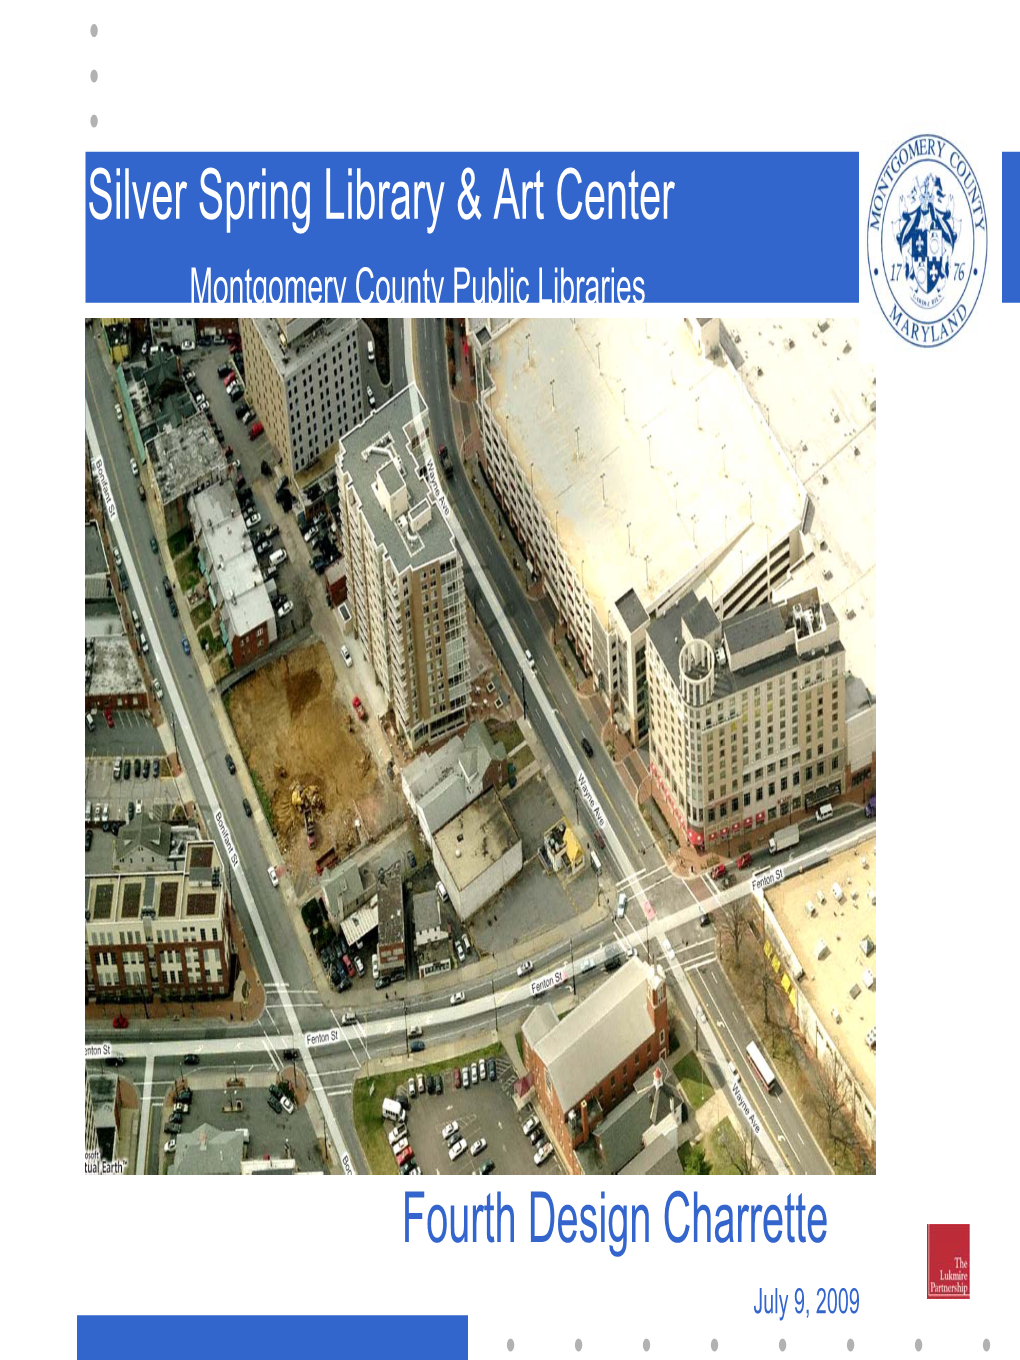 Silver Spring Library & Art Center Fourth Design Charrette